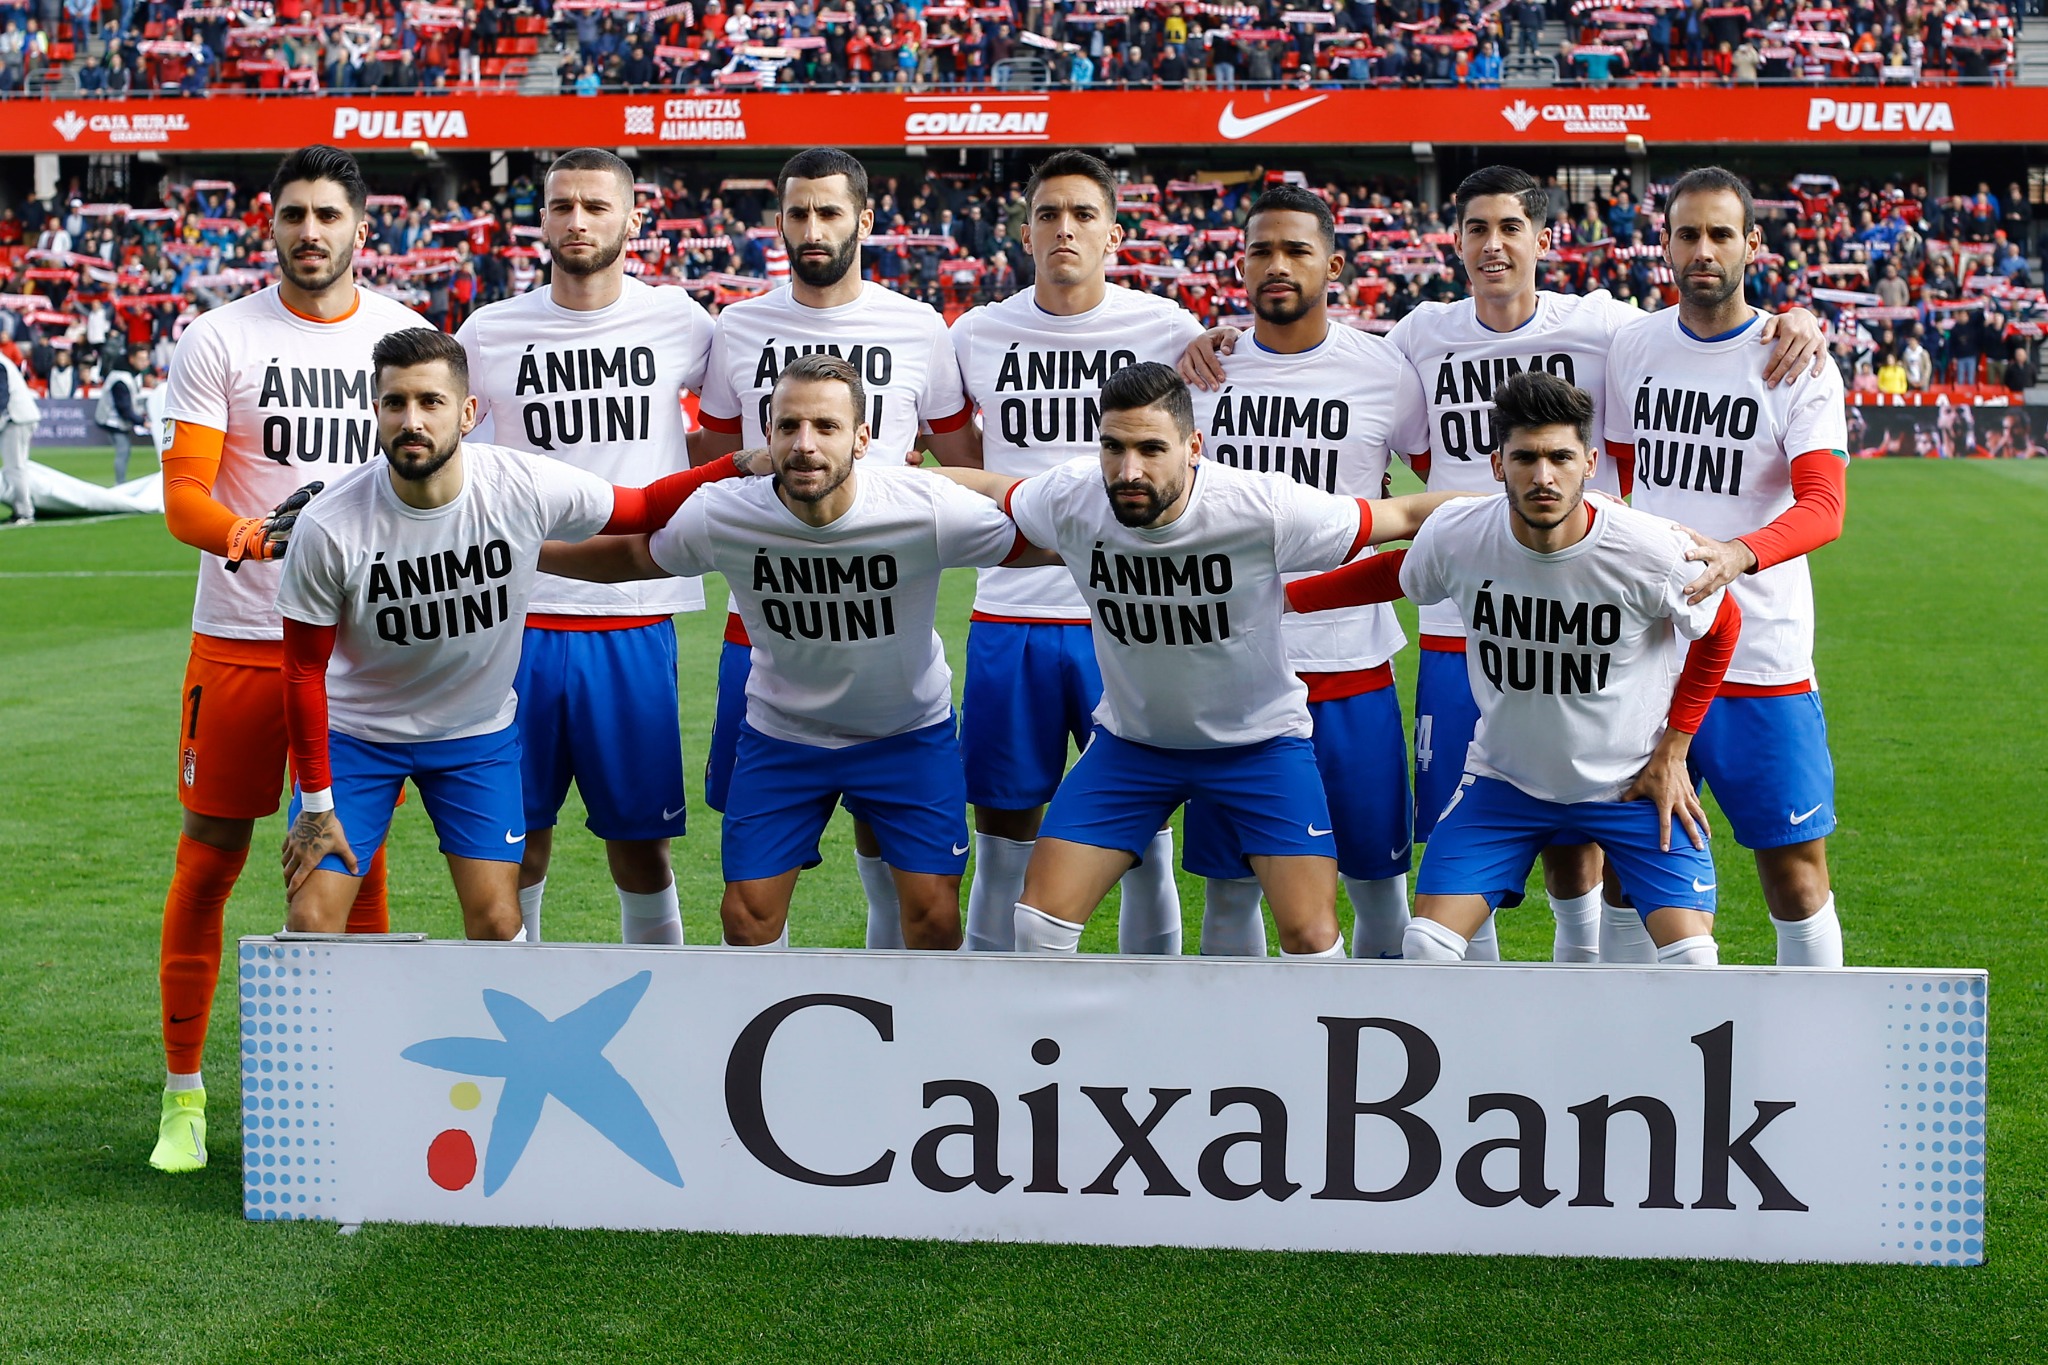 Jugadores del Granada CF posando con la camiseta de apoyo a Quini